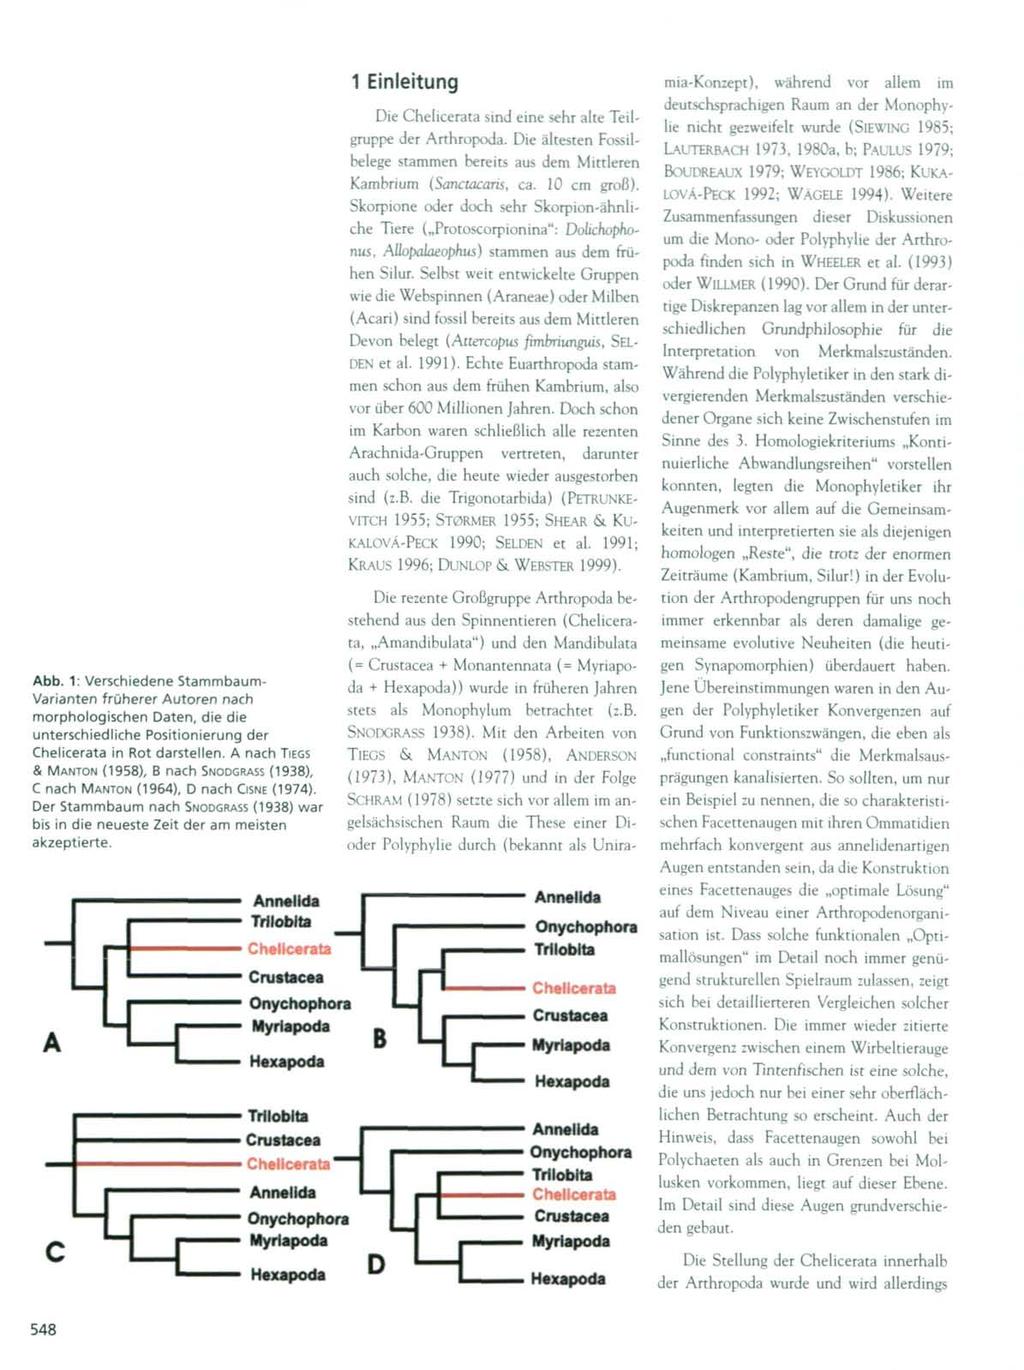 Abb. 1: Verschiedene Stammbaum- Varianten früherer Autoren nach morphologischen Daten, die die unterschiedliche Positionierung der Chelicerata in Rot darstellen.